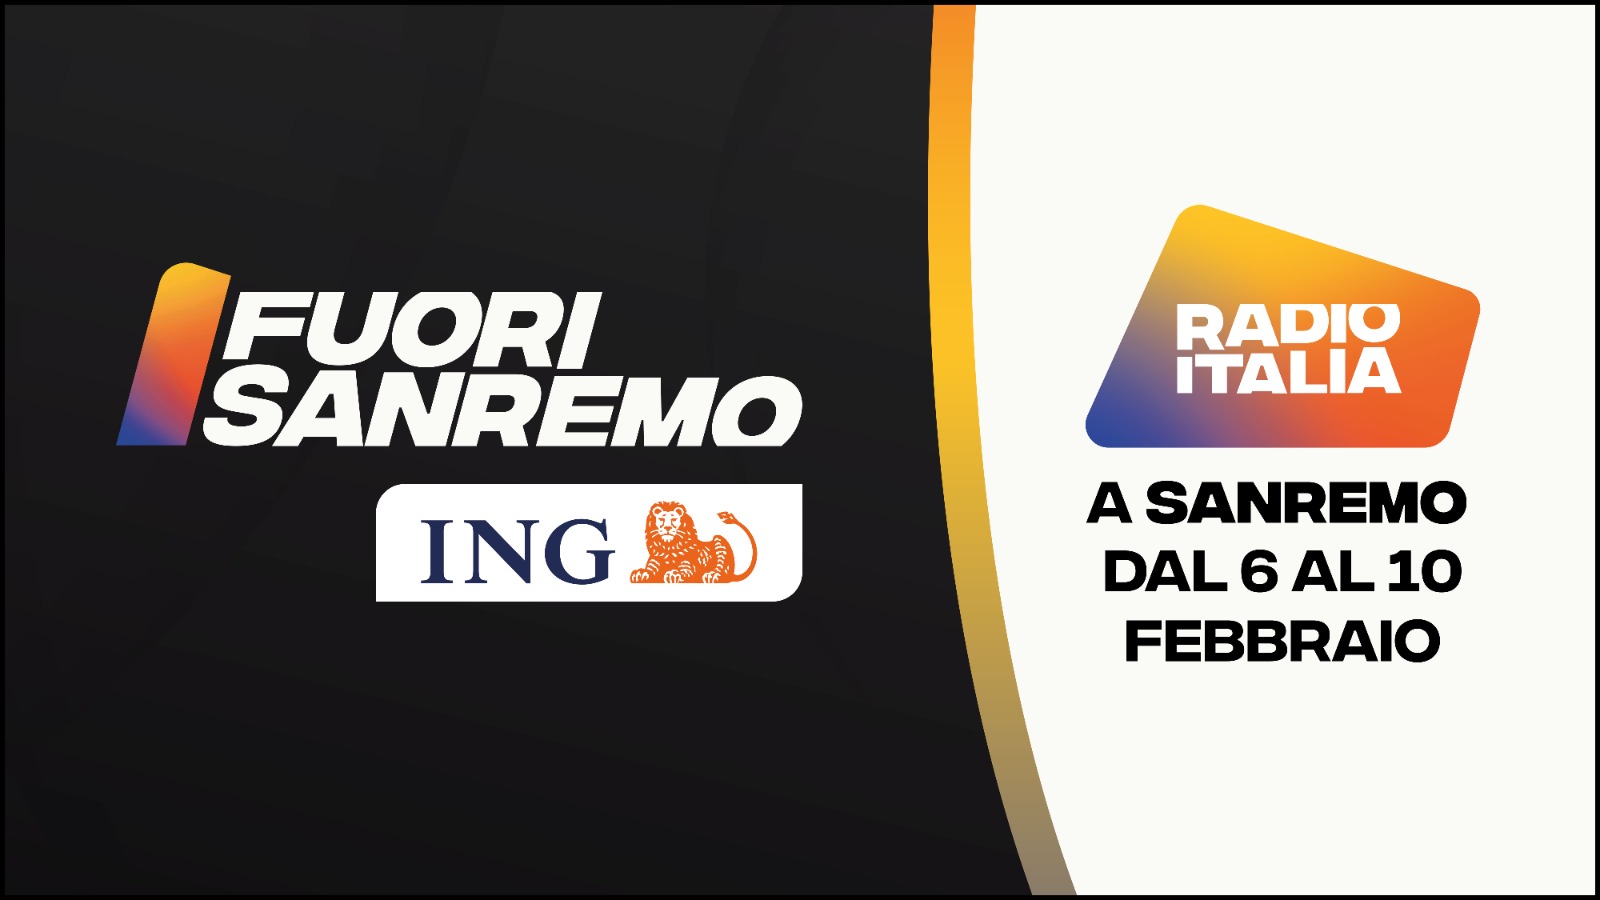 Radio Italia a Sanremo 2024, con gli studi Fuori Sanremo Ing, che accoglieranno tutti i protagonisti del Festival